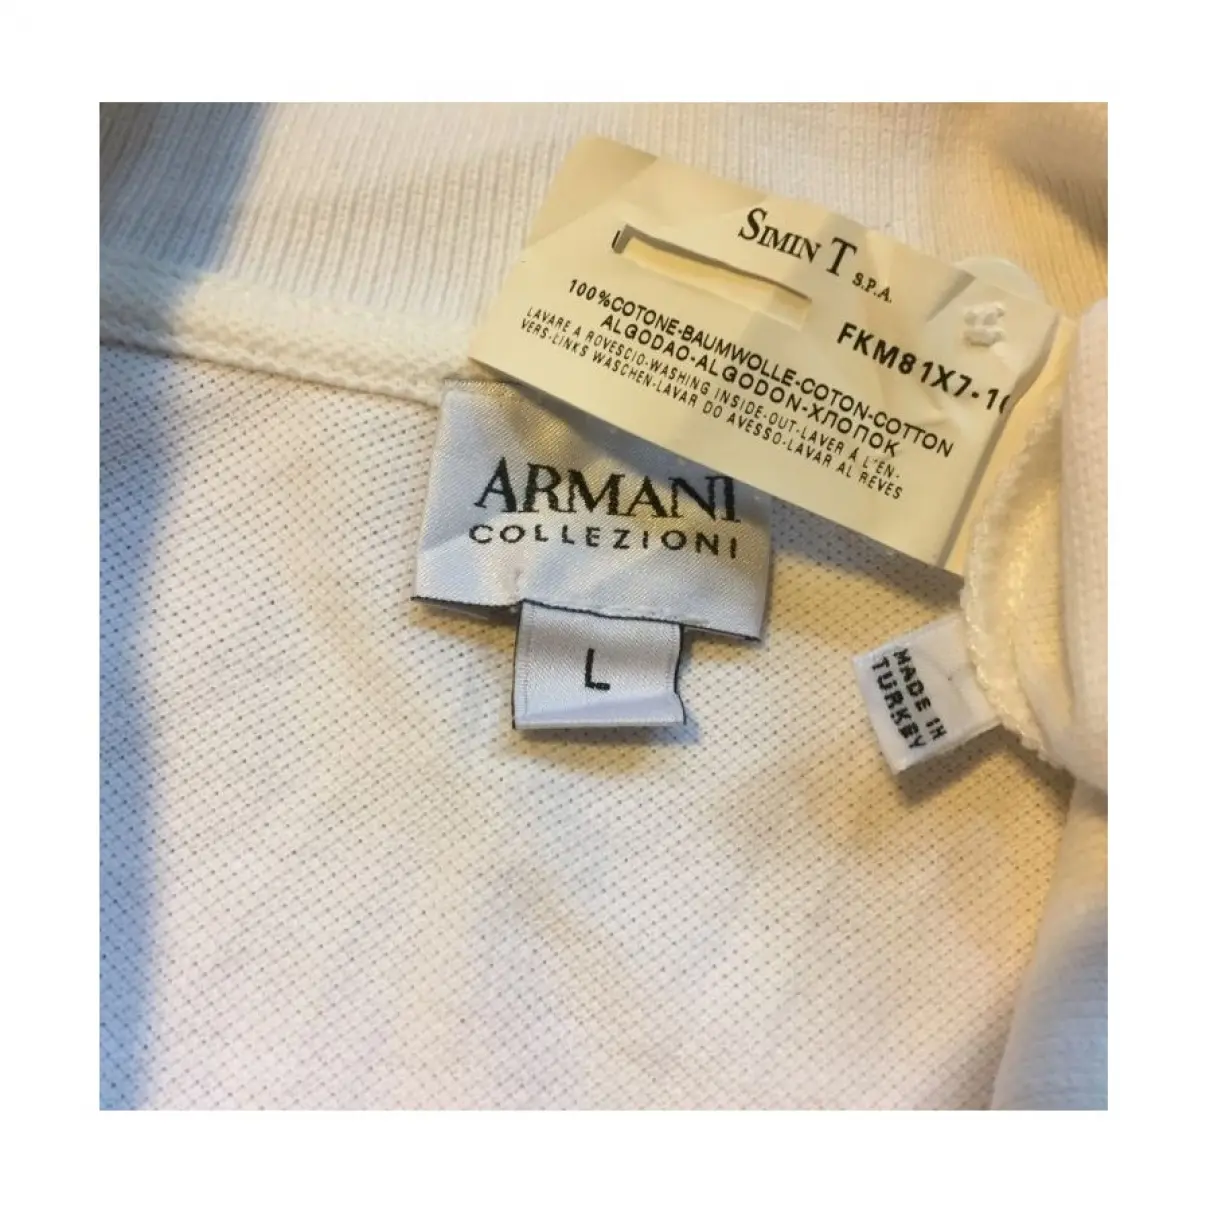 Luxury Armani Collezioni Polo shirts Men